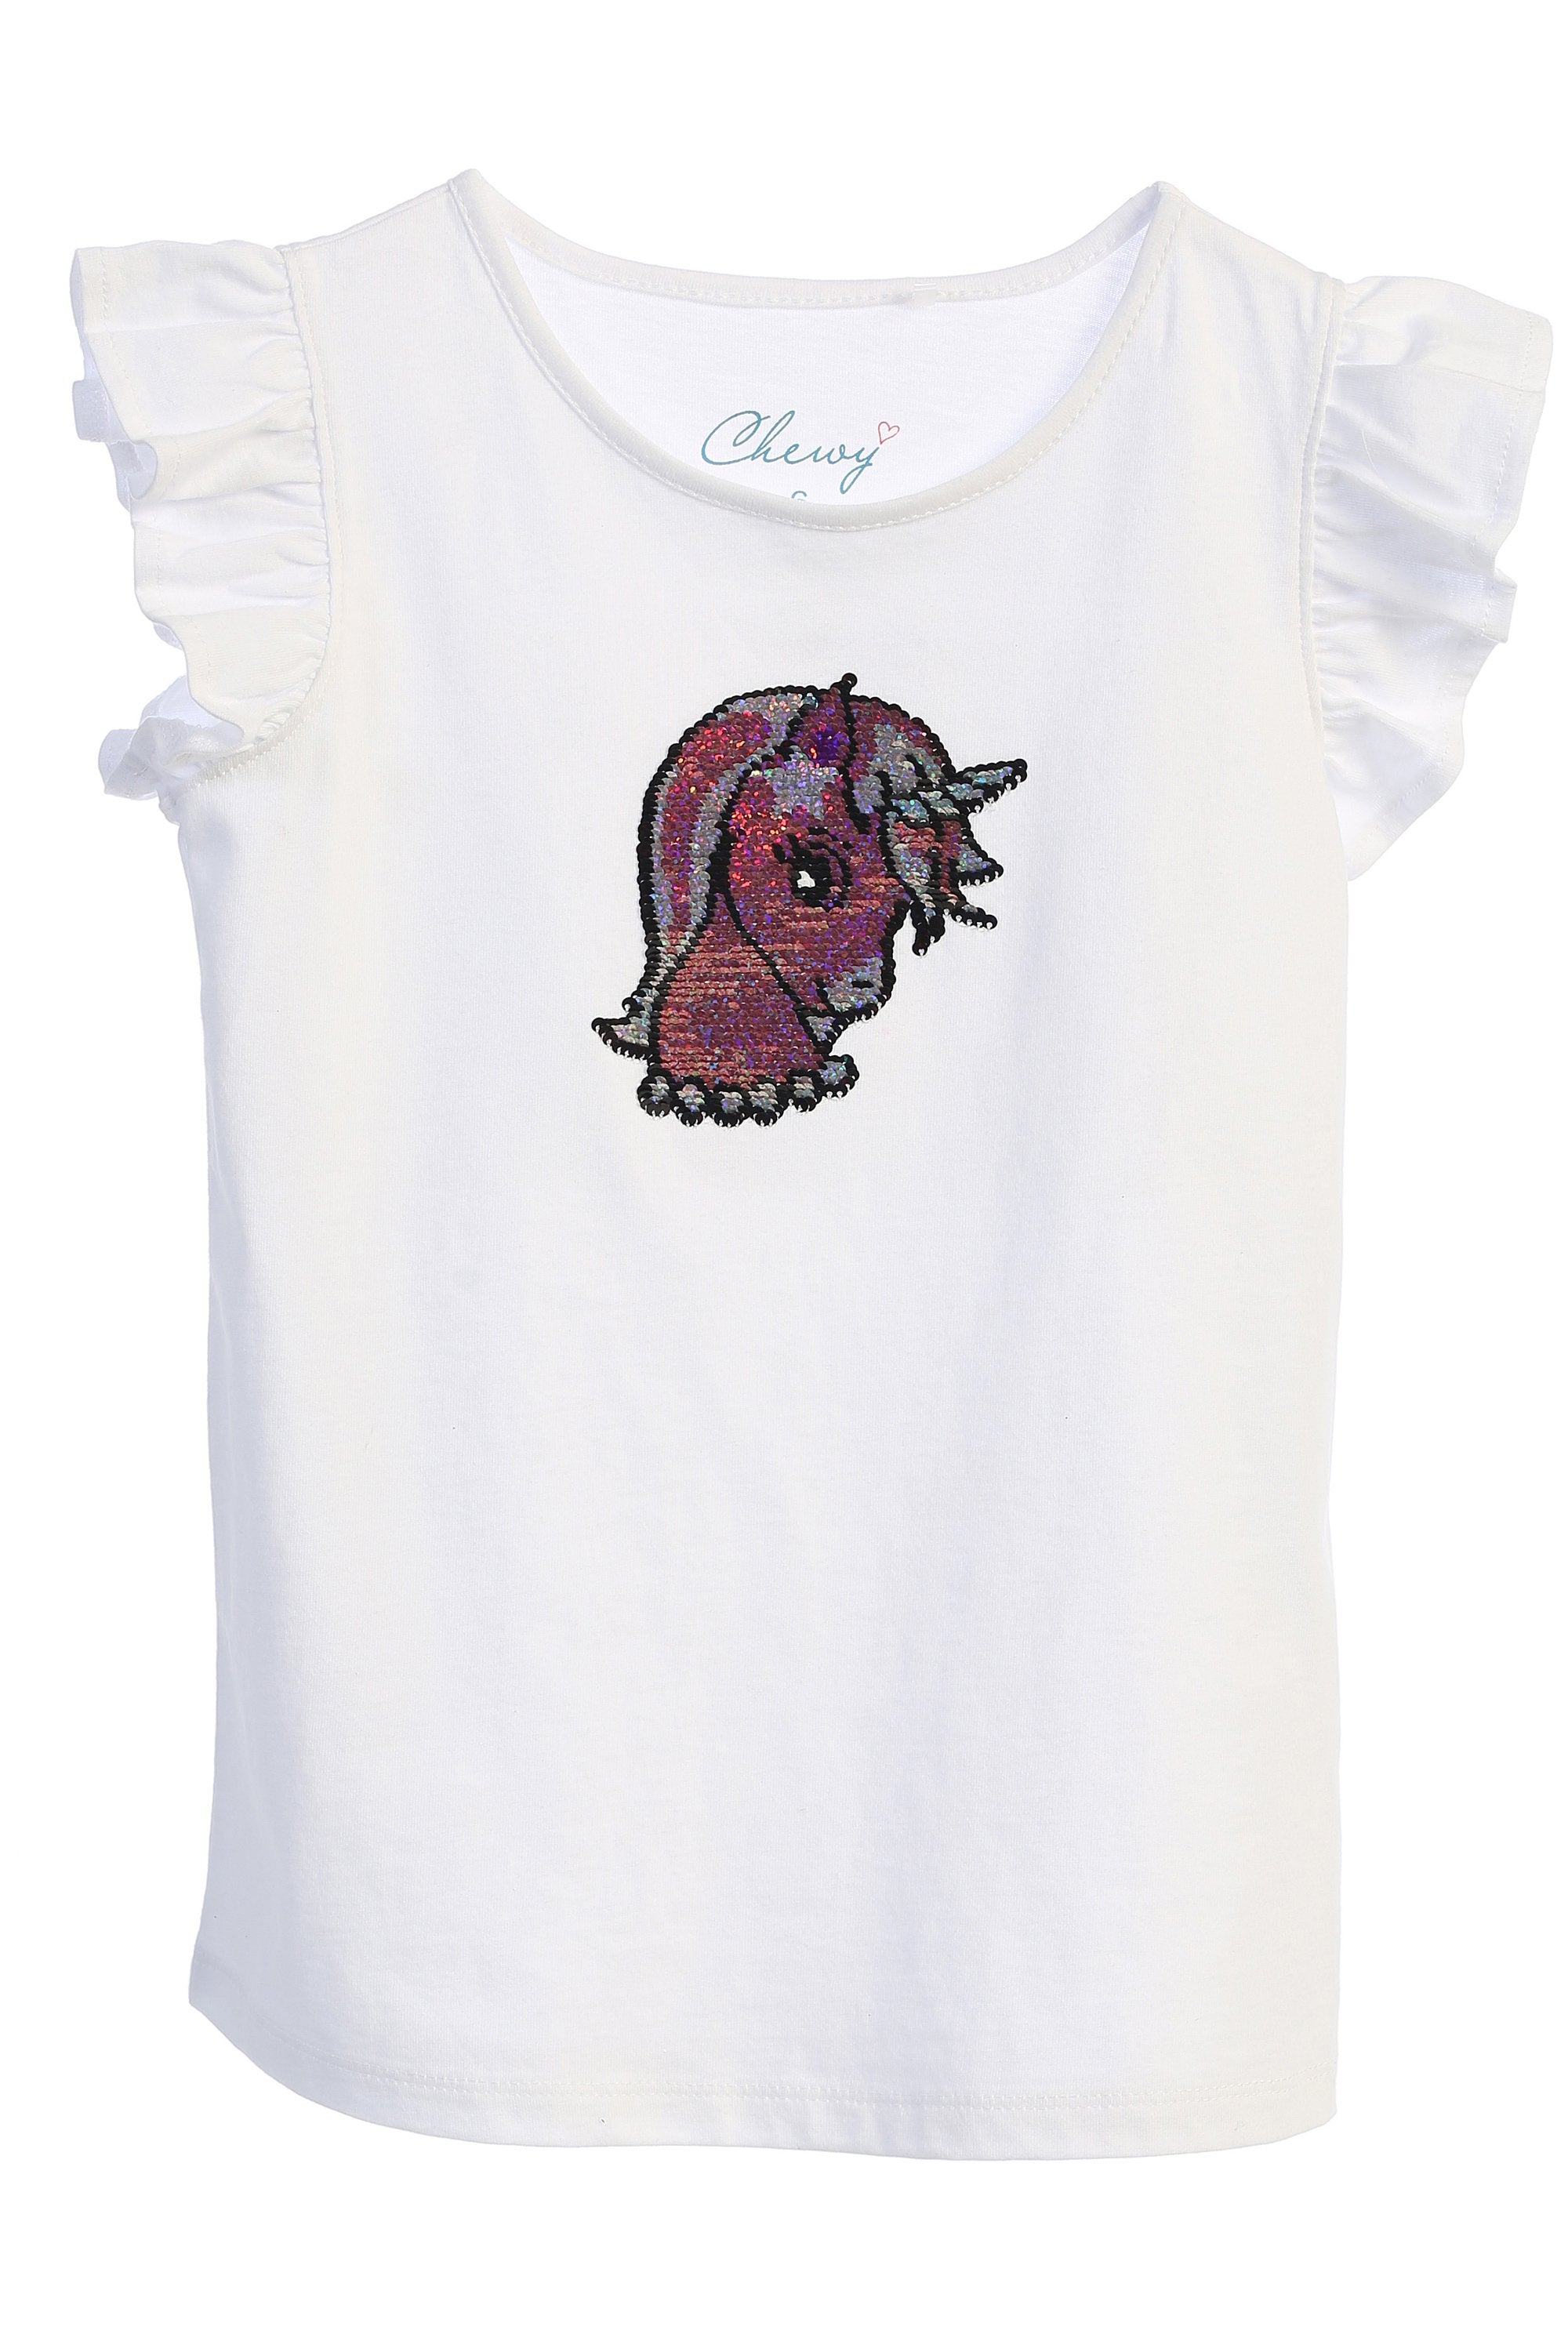 Unicorn Flip Sequin Shirt for Girls – Kid's Dream